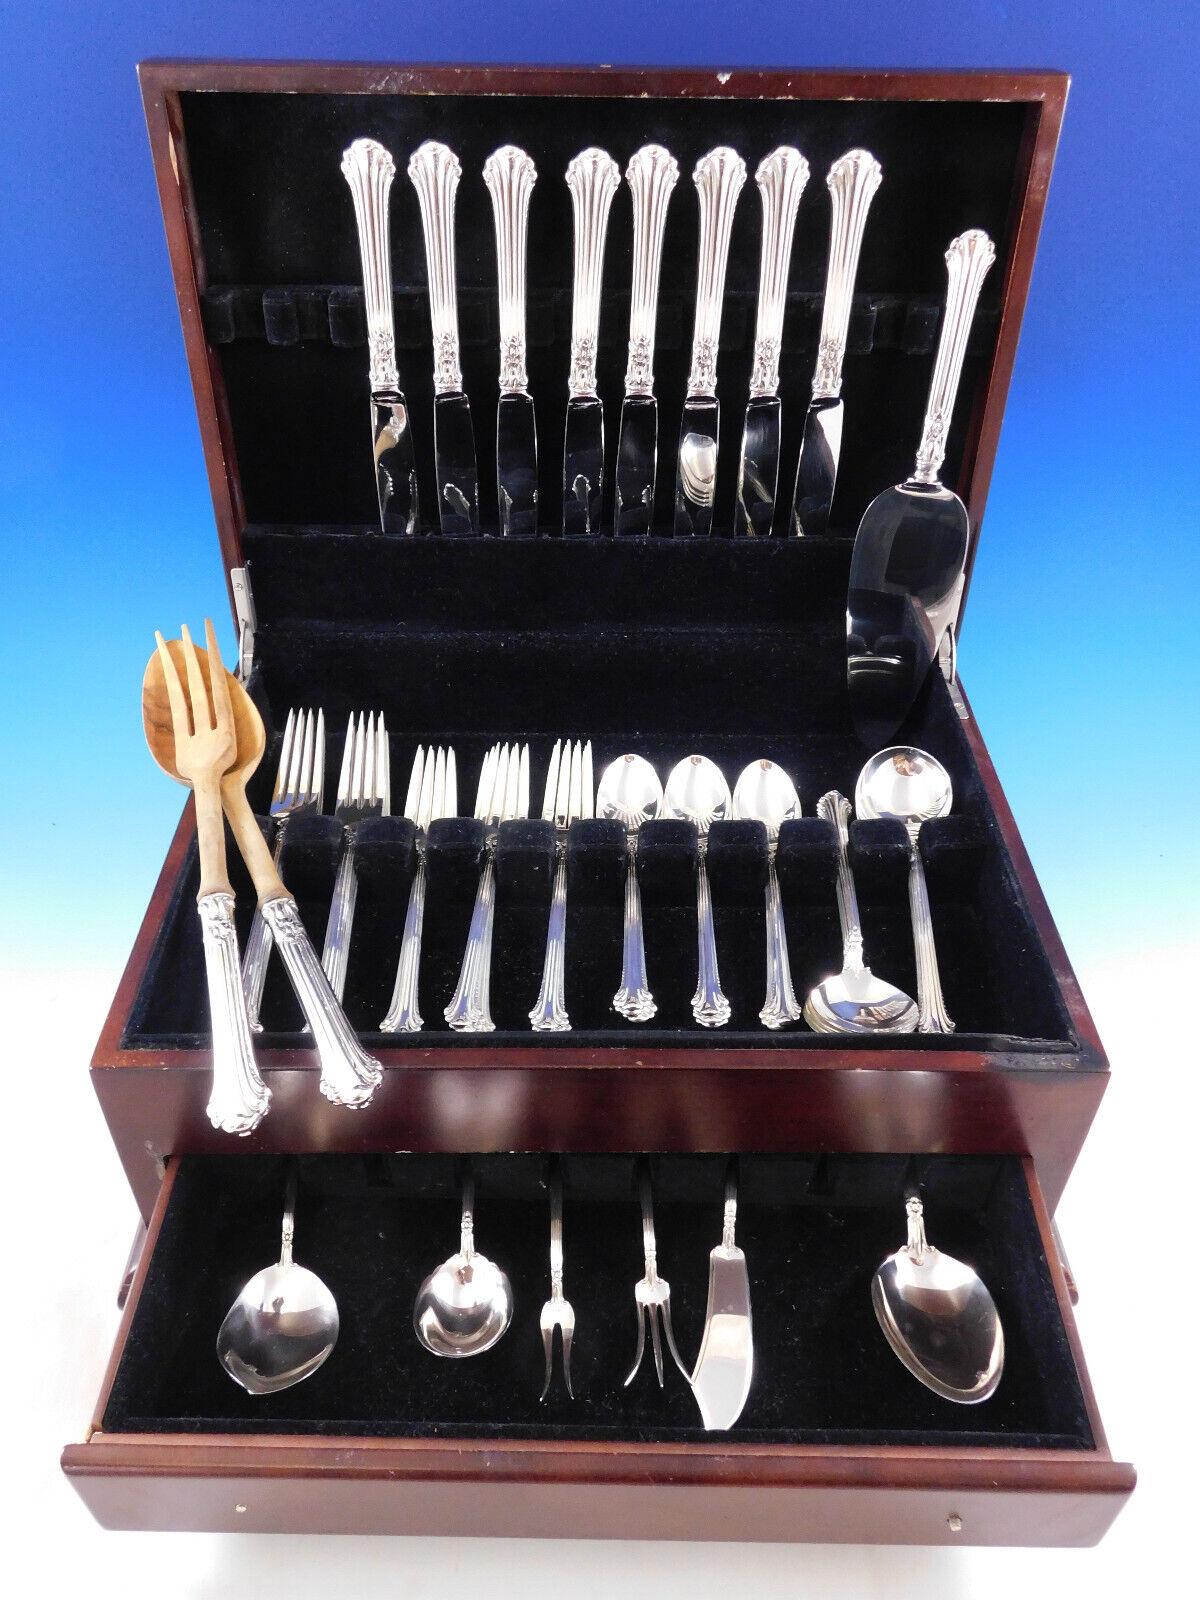 Set di posate in argento Plumes by Towle, 49 pezzi. Questo set comprende:

8 coltelli da pranzo, 9 1/2